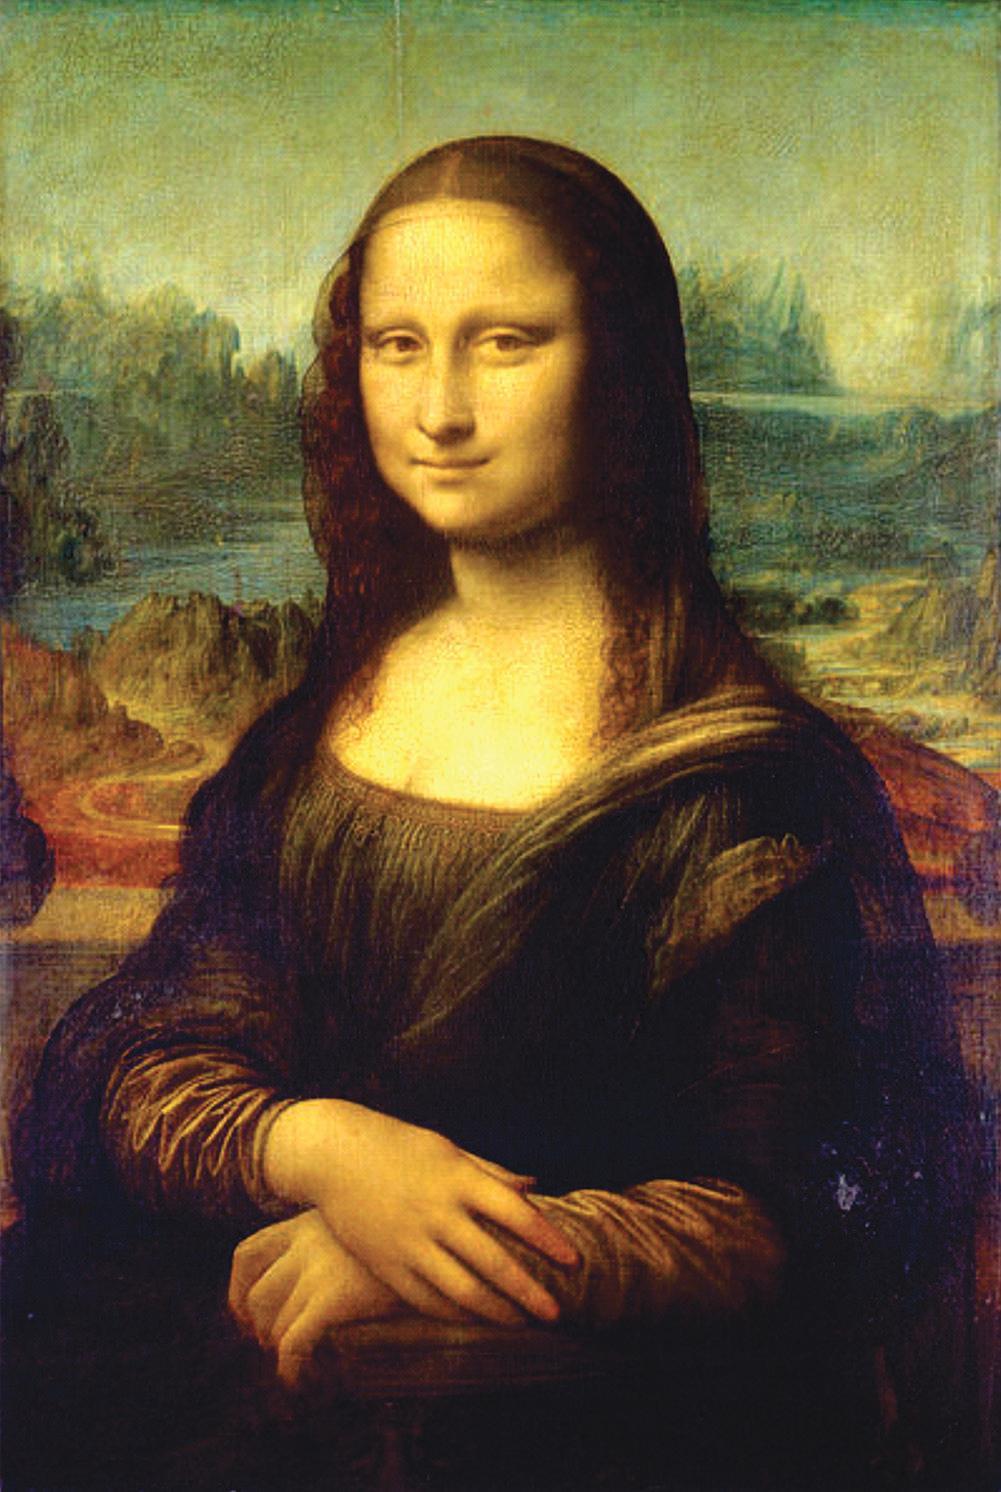 Mona Lisa Você conhece alguma história sobre Mona Lisa? Observe, investigue e perceba a imagem. Quais detalhes chamam a sua atenção?